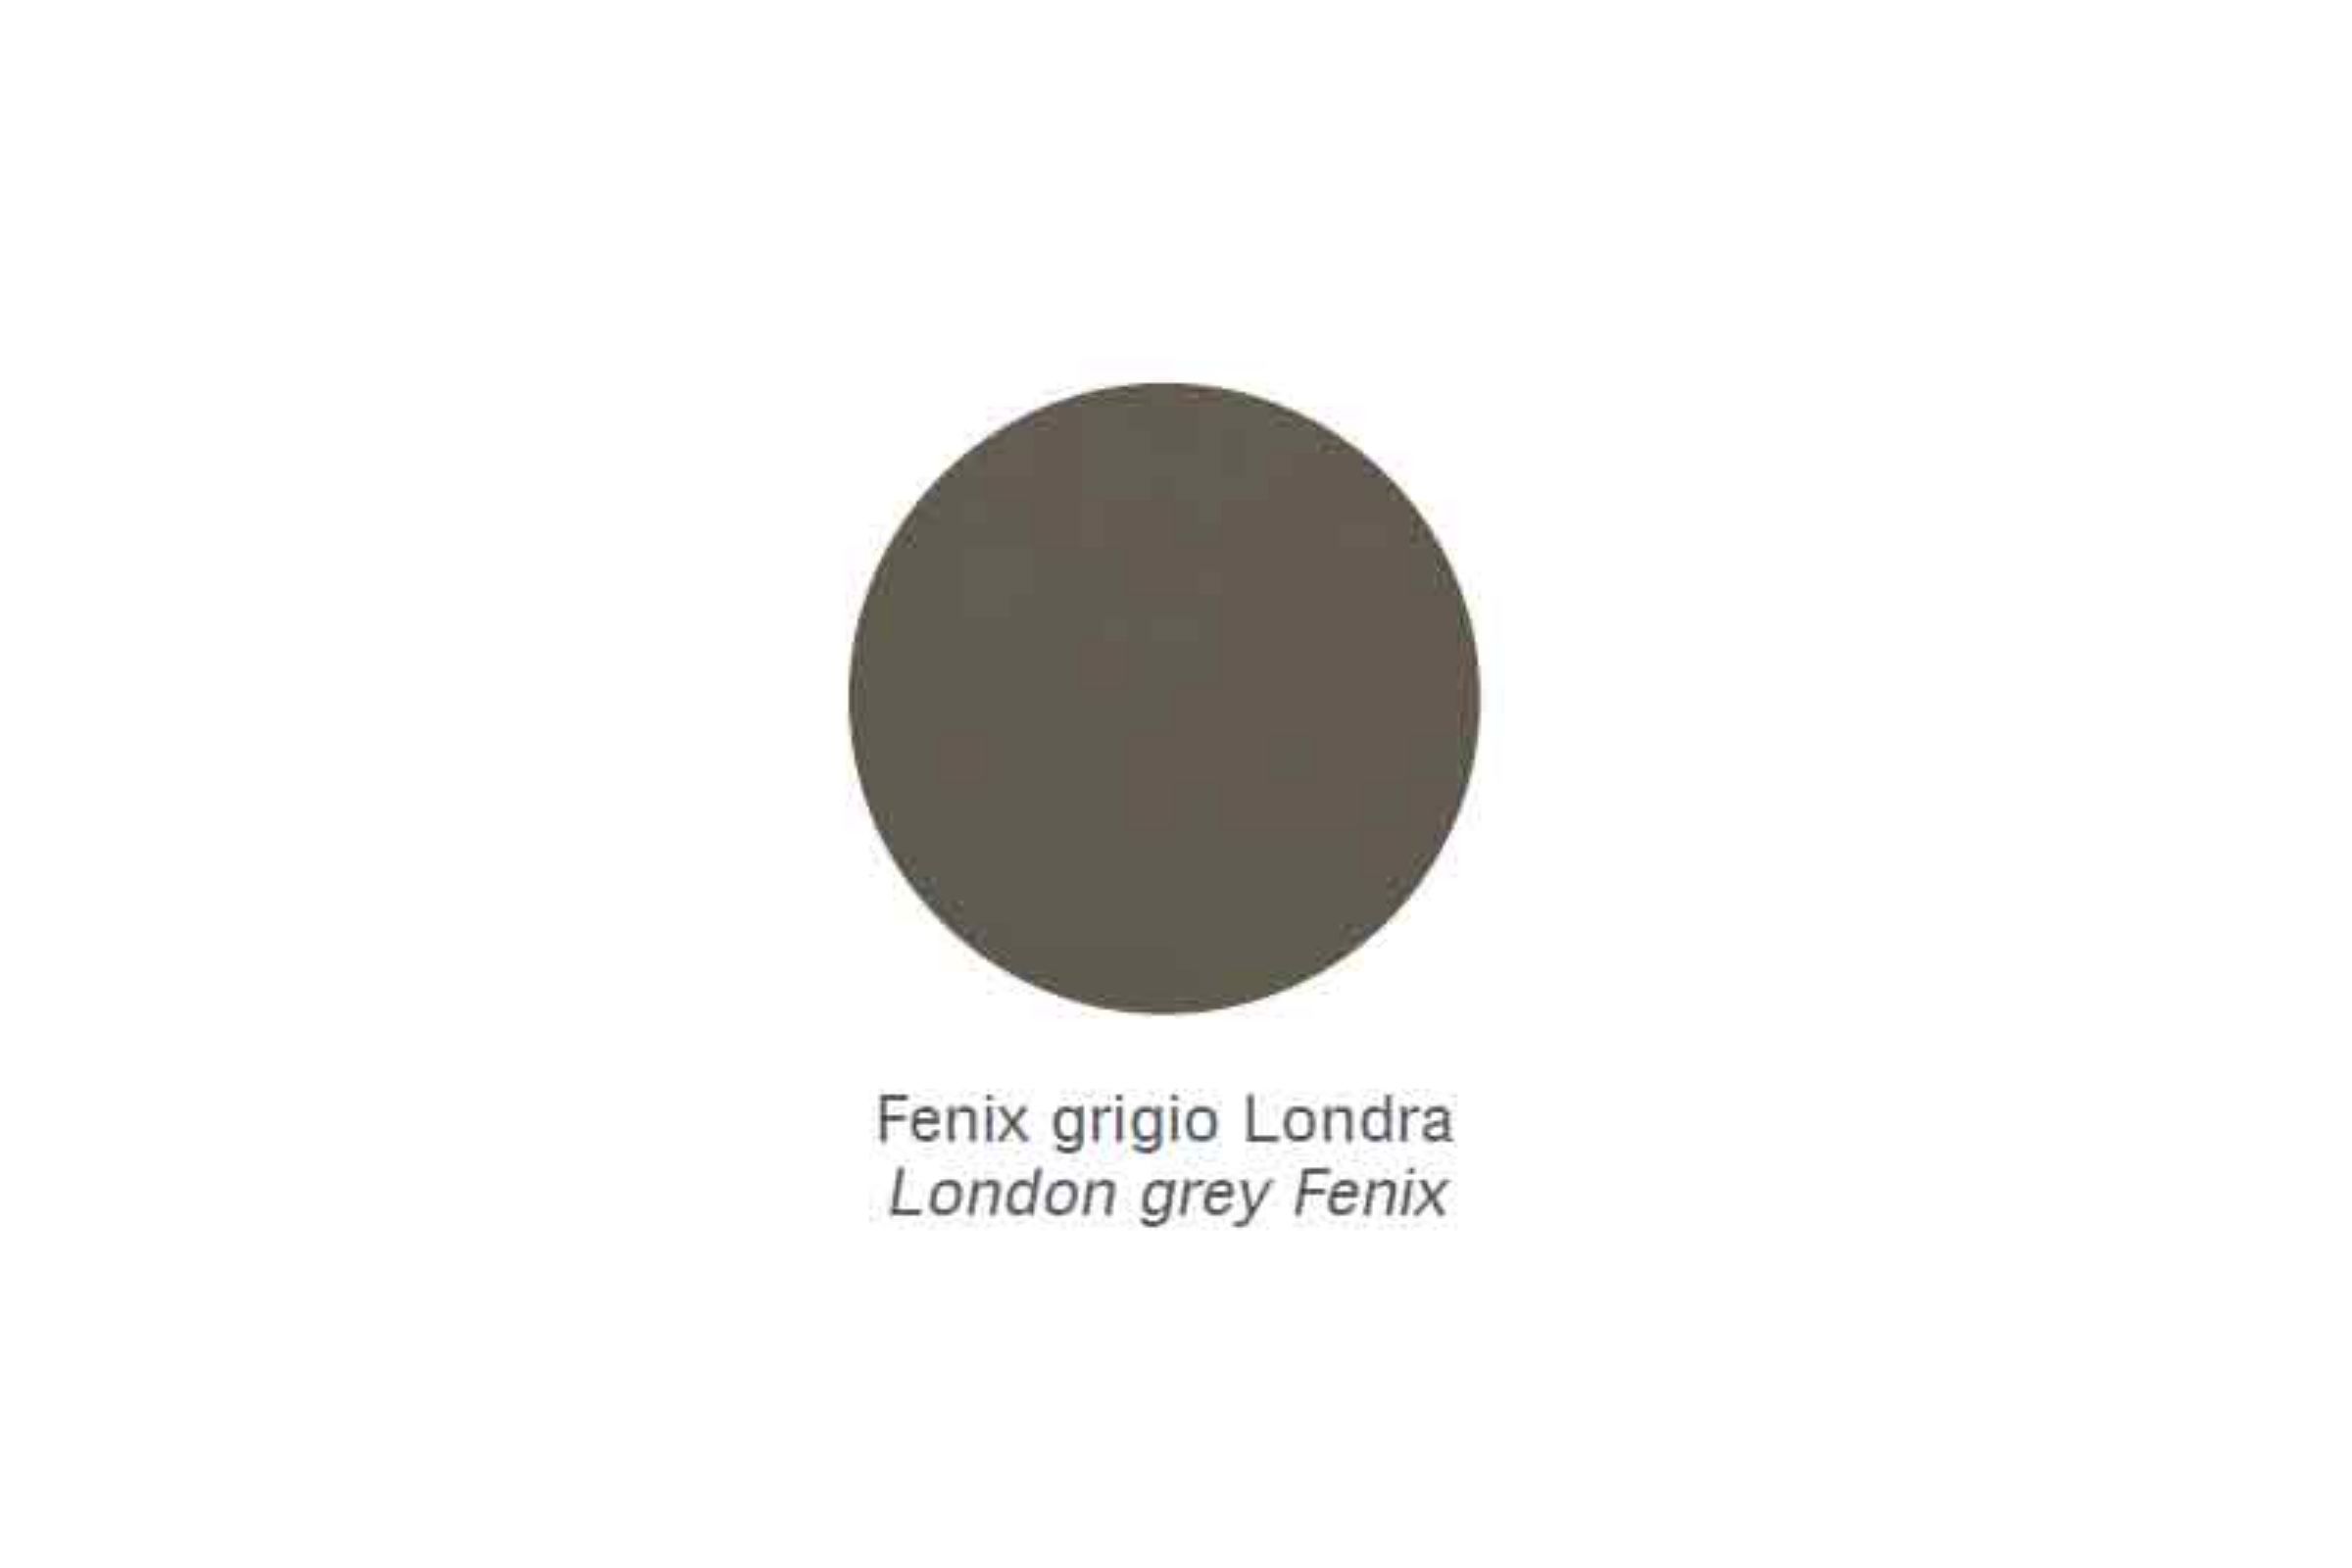 Mensola Zen /70 - Mensola Zen /70 Fenix grigio Londra